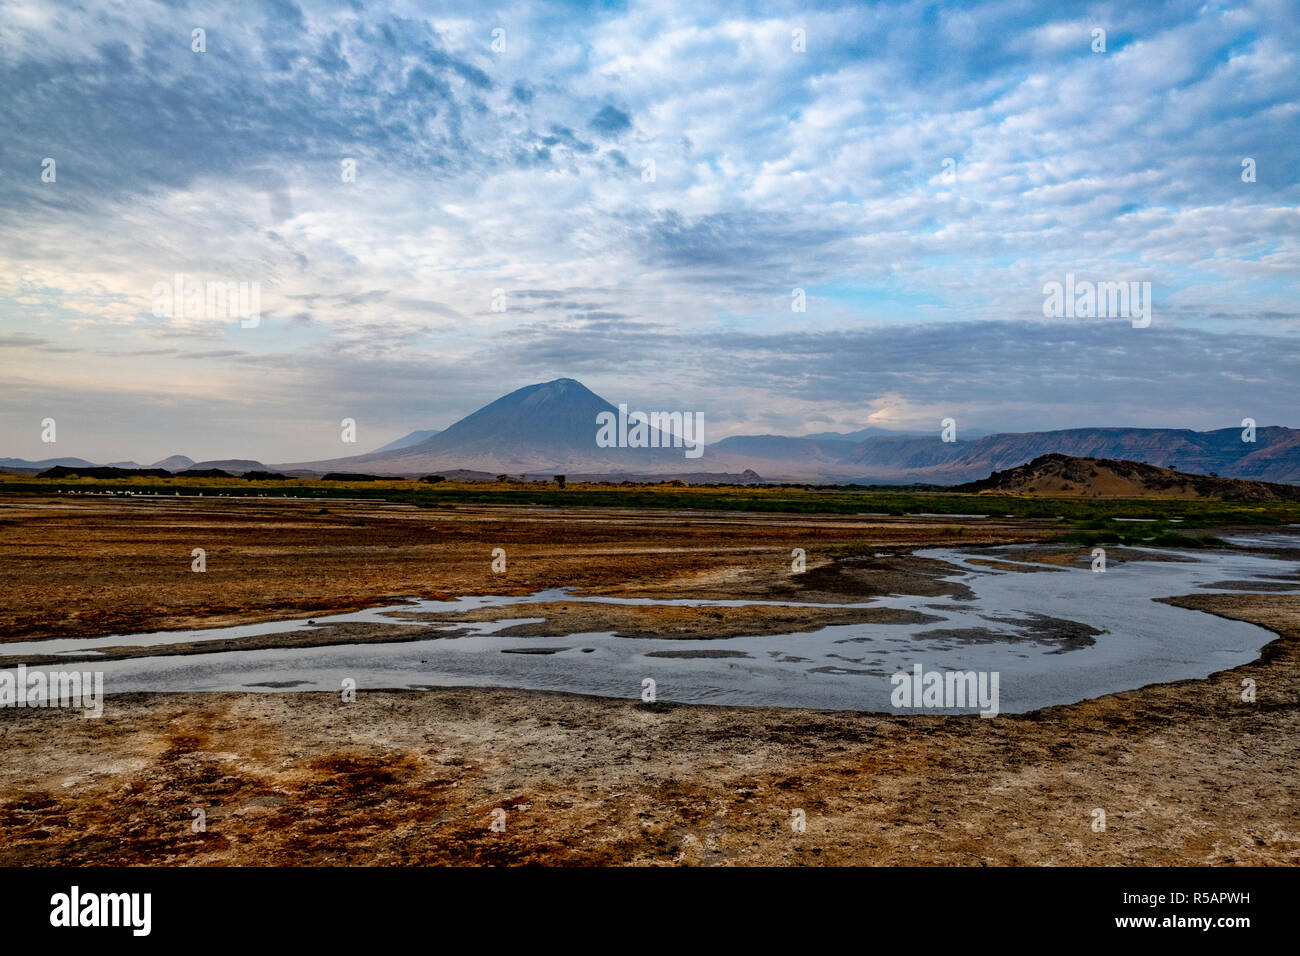 La "Montagne de Dieu" (Ol Doinyo Lengai langue Masai) volcan actif sur la rive sud du lac Natron dans la région du nord de la Tanzanie Arusha Banque D'Images